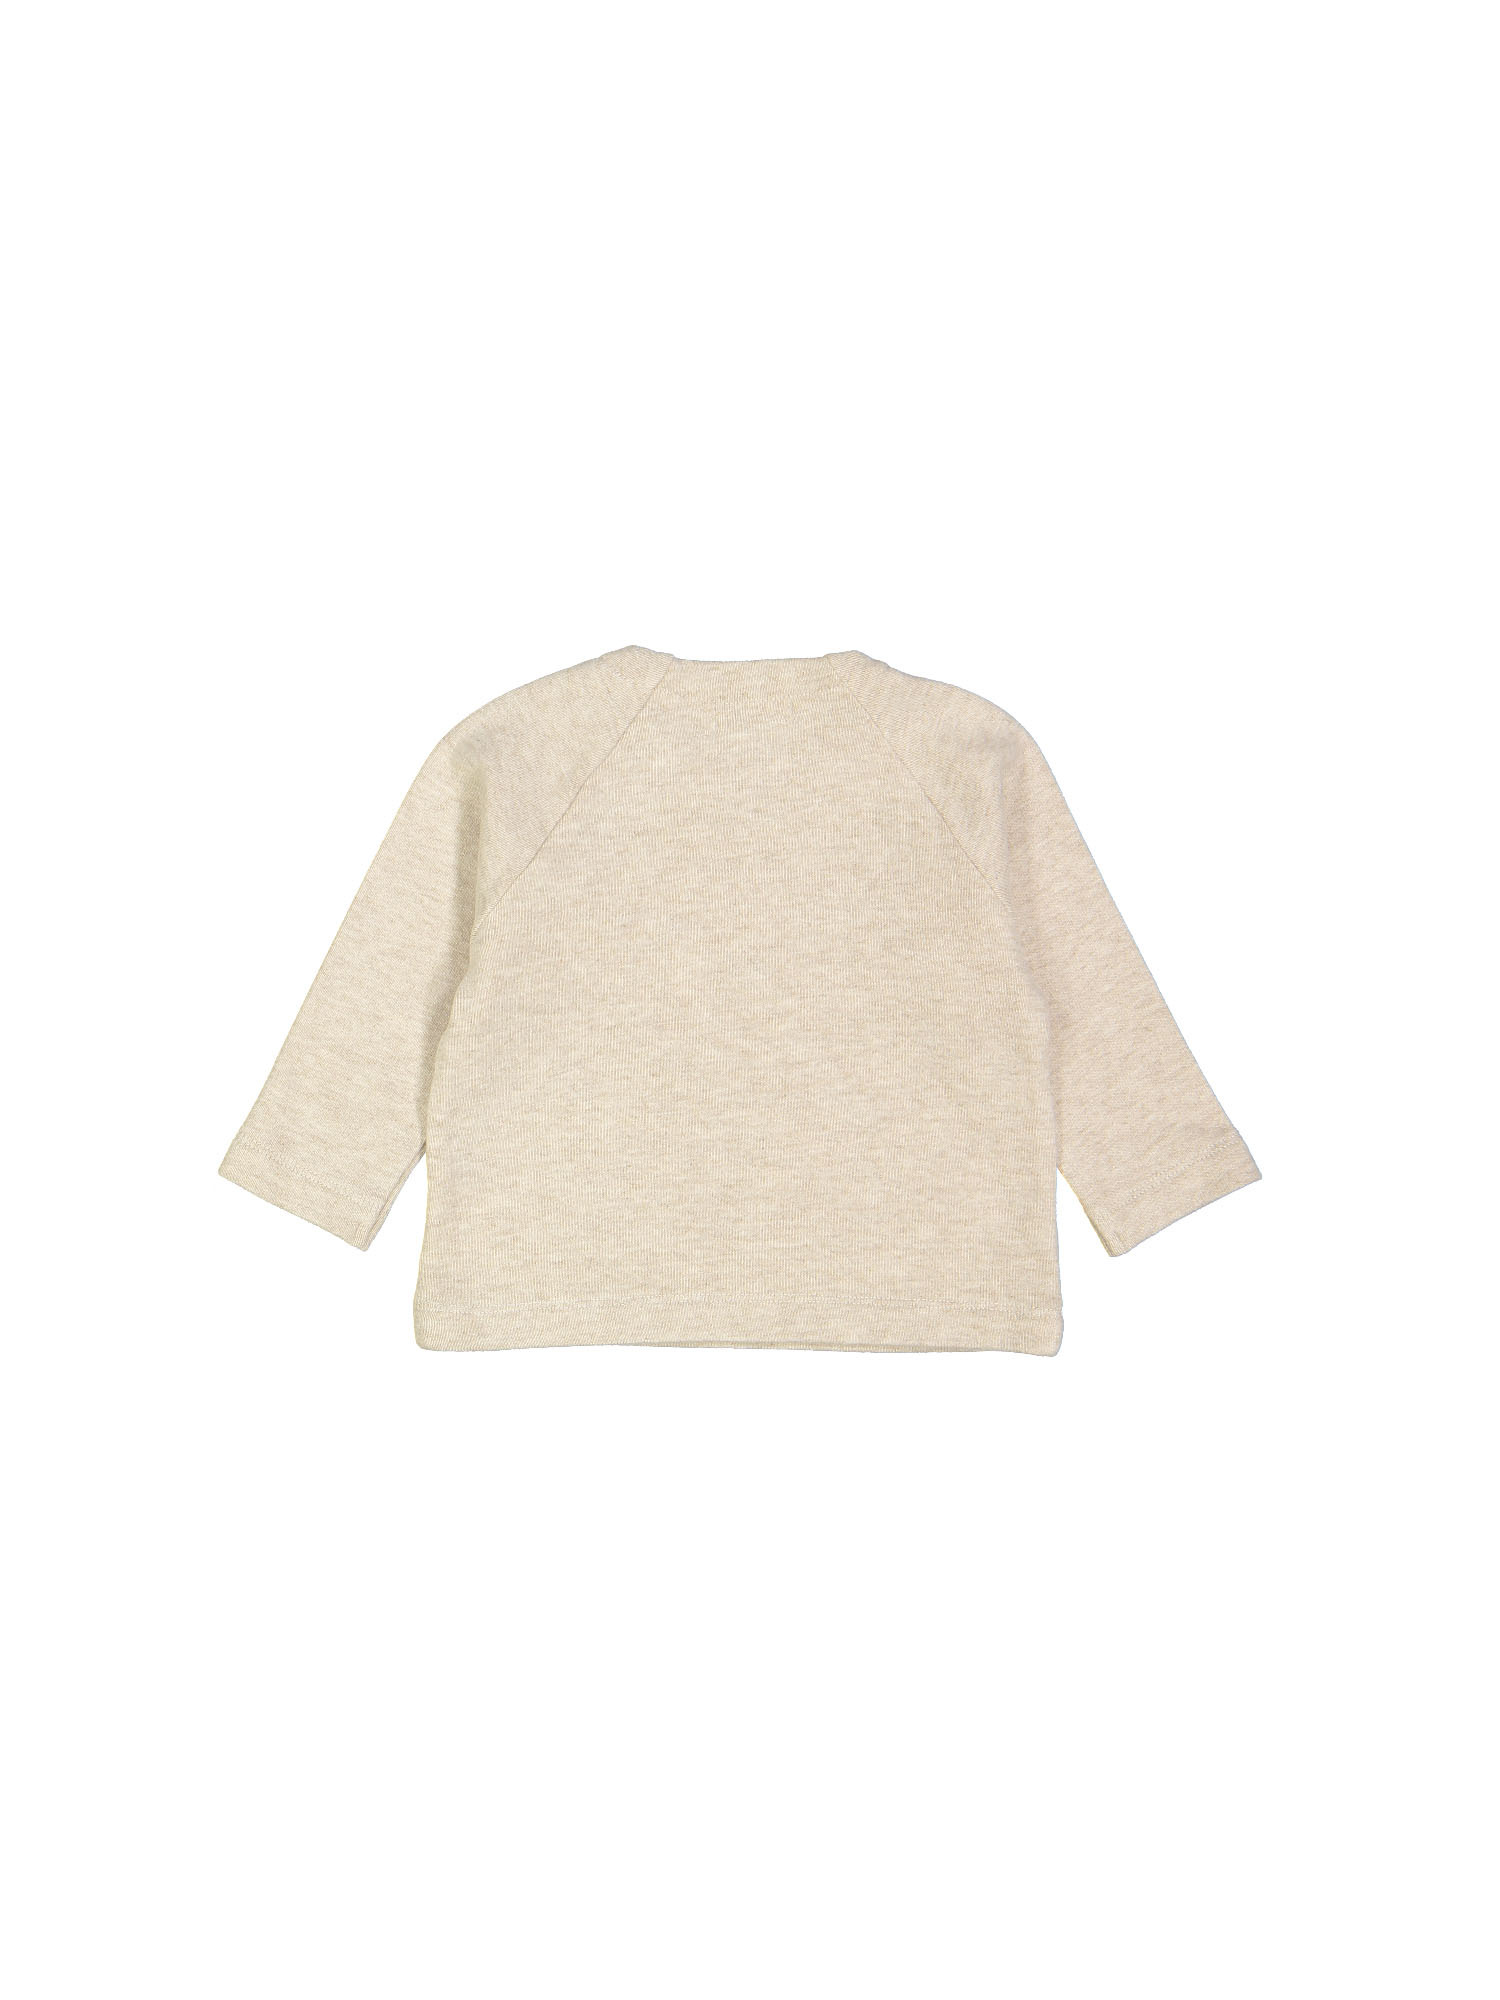 sweater baby soft beige 00m